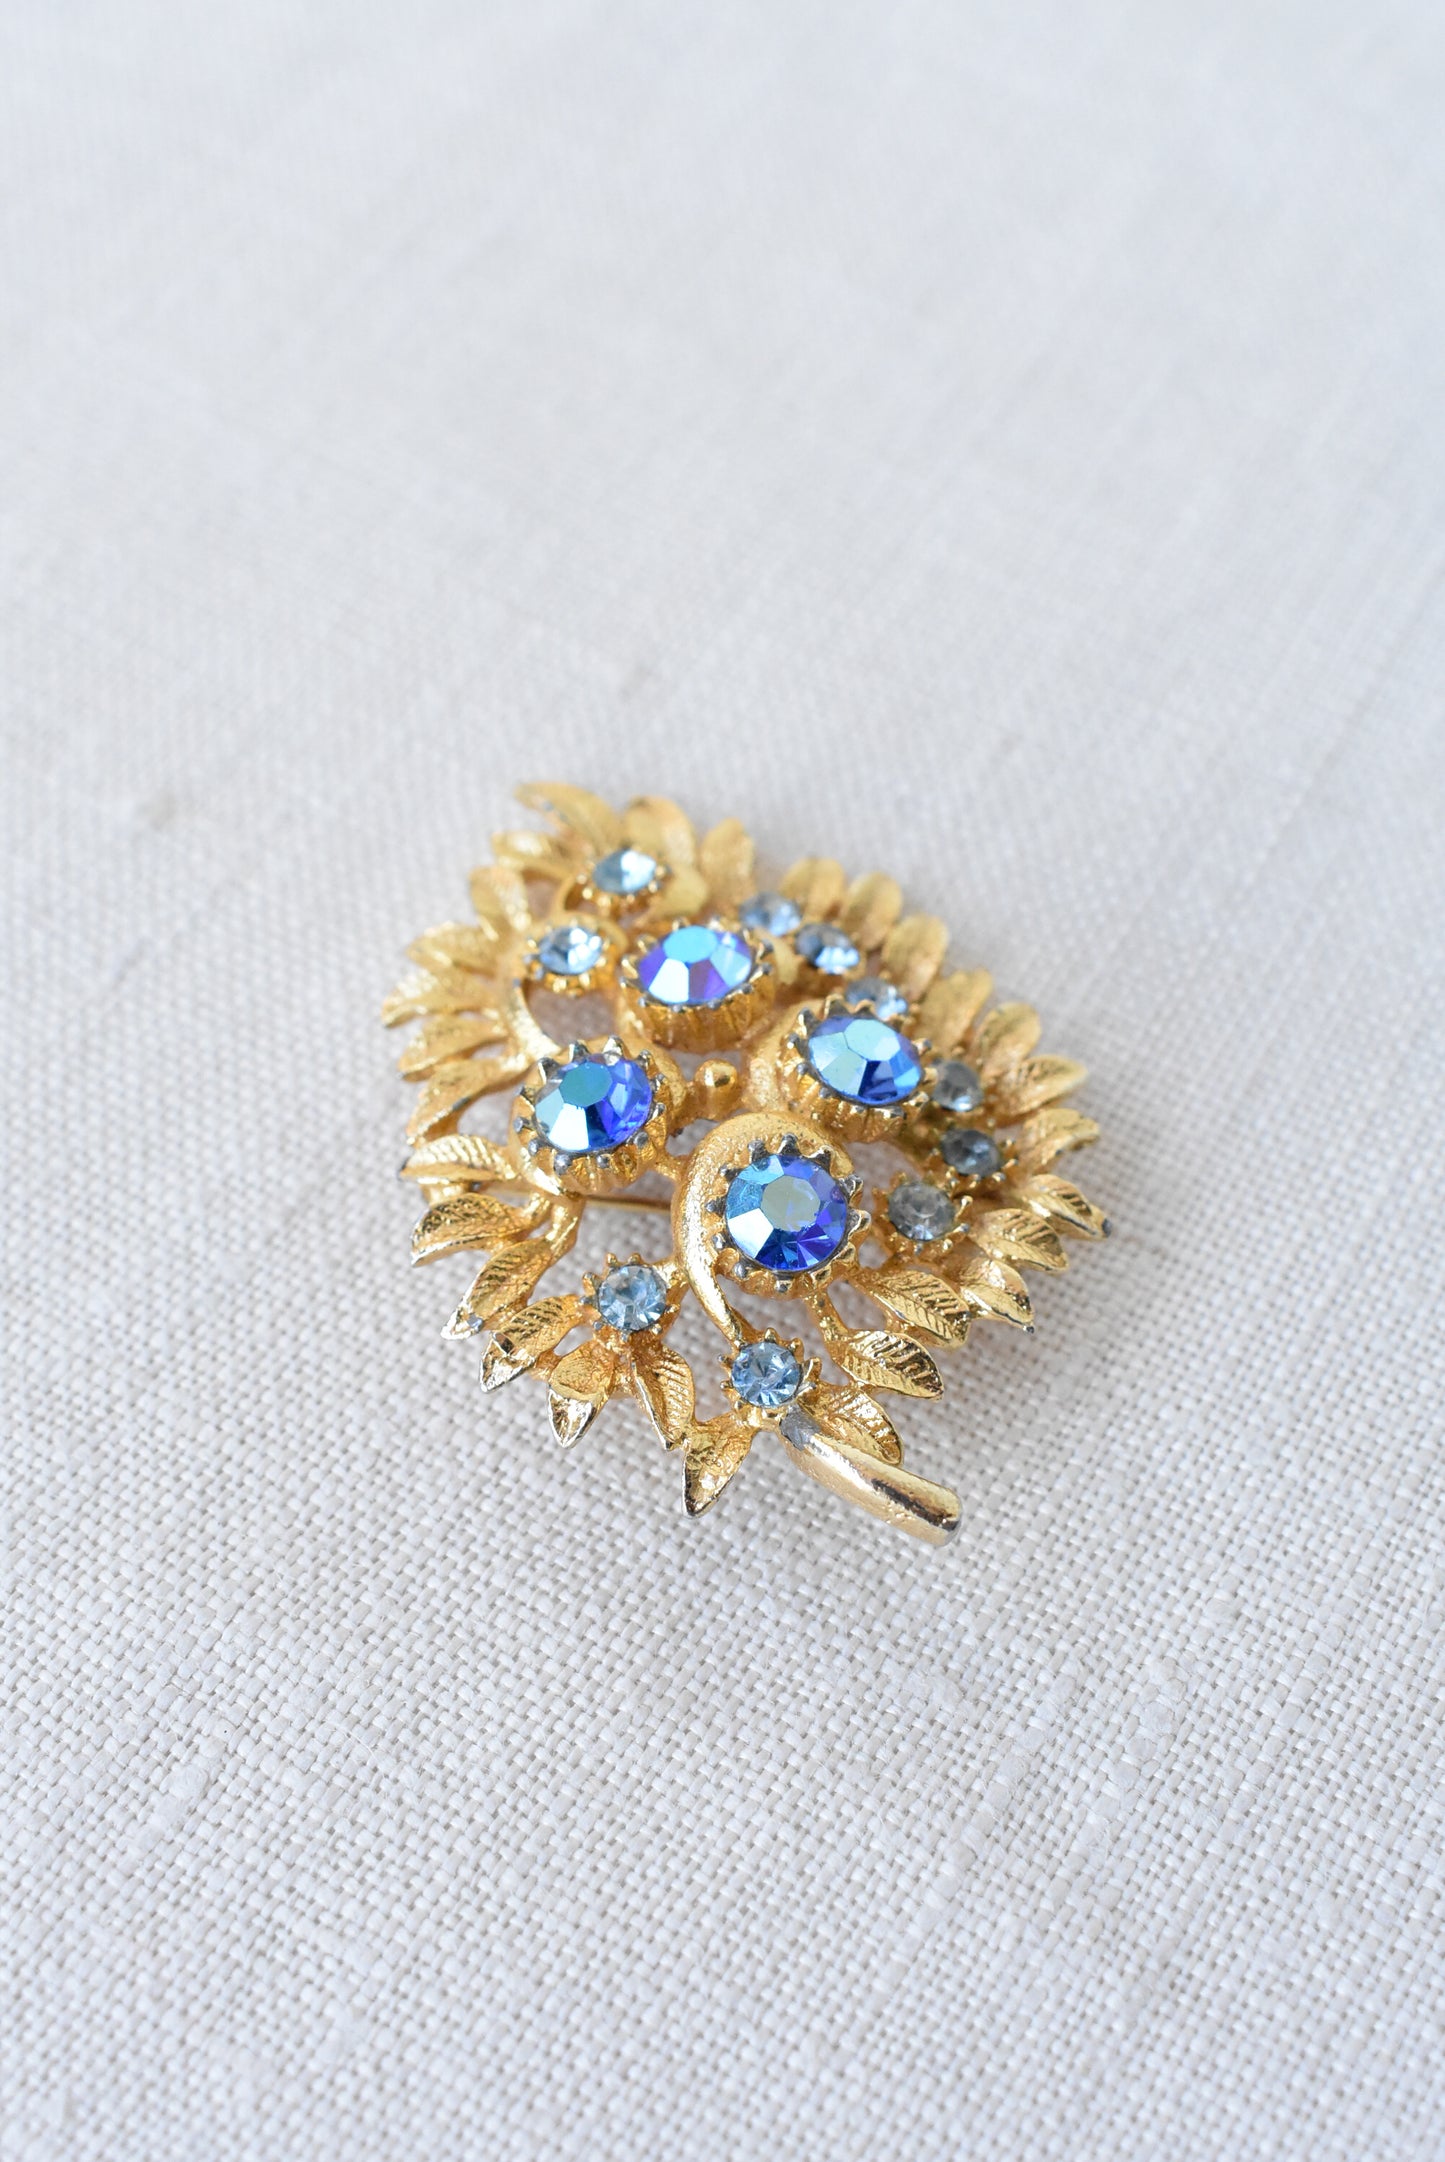 Vintage golden + blue gems brooch